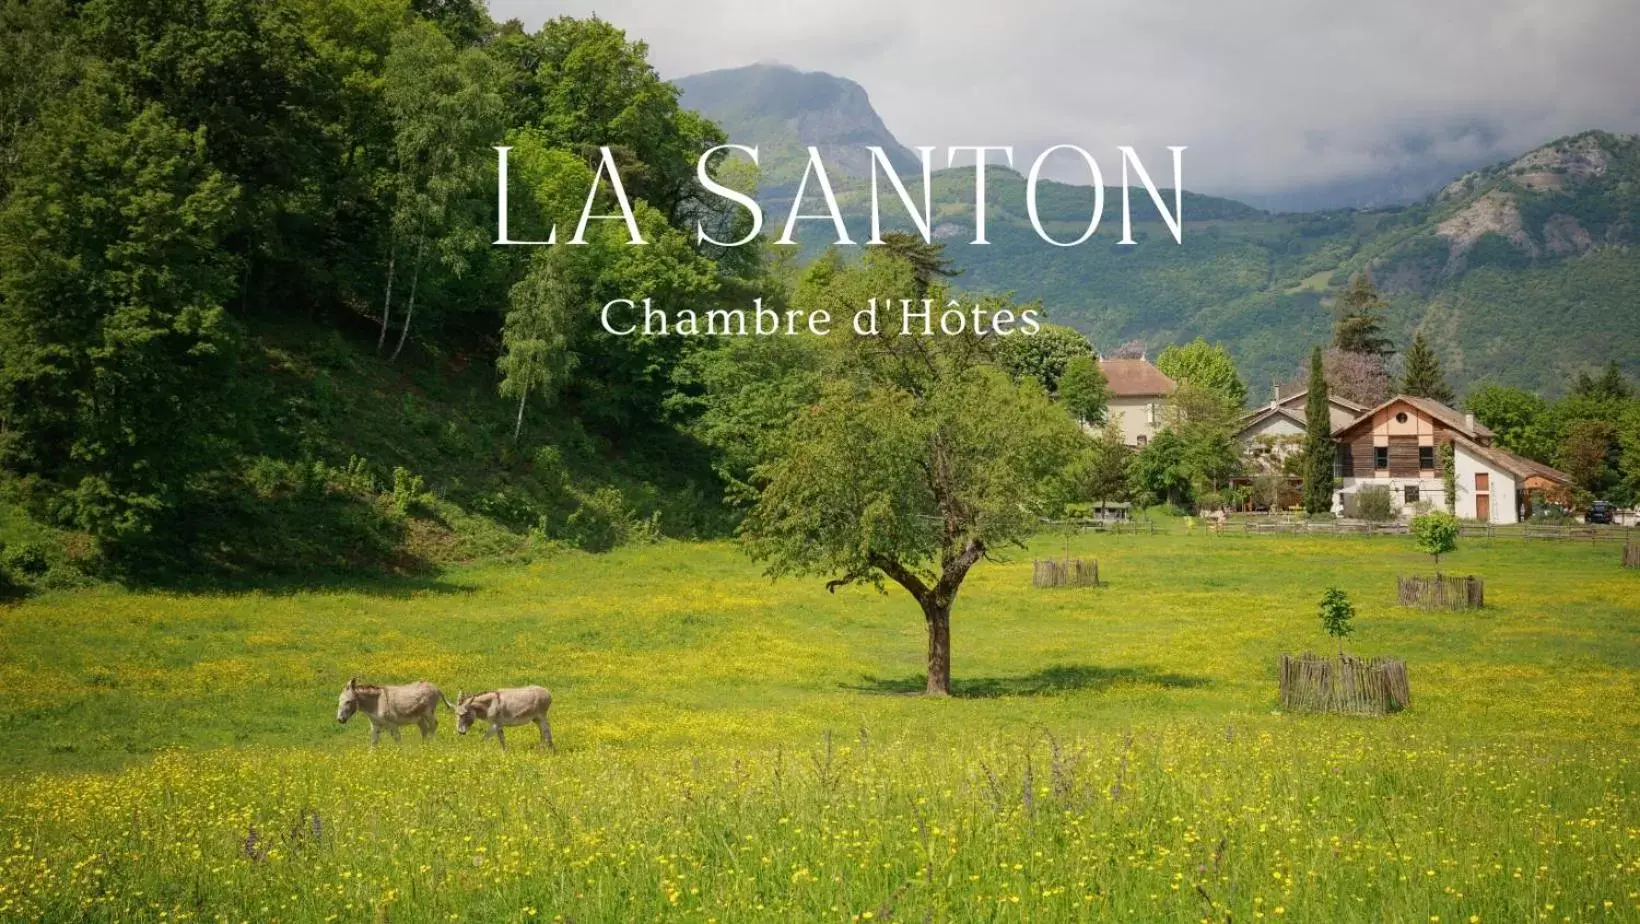 Mountain view in La Santon Chambres d'hôtes